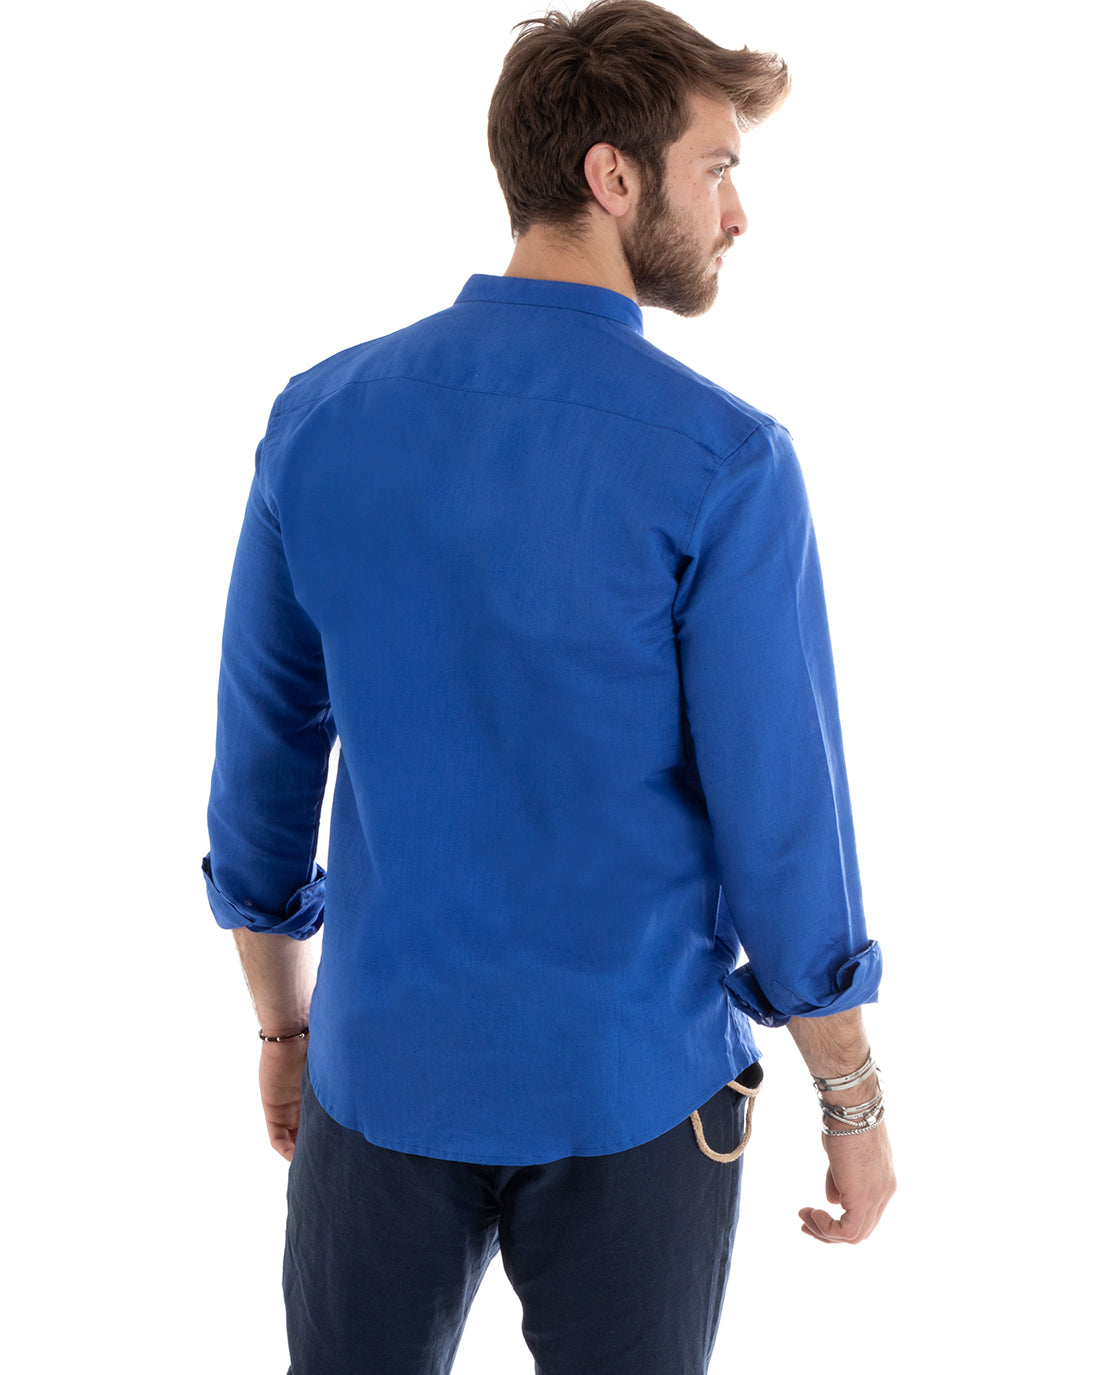 Camicia Uomo Collo Coreano Manica Lunga Lino Tinta Unita Sartoriale Blu Royal GIOSAL-C2669A